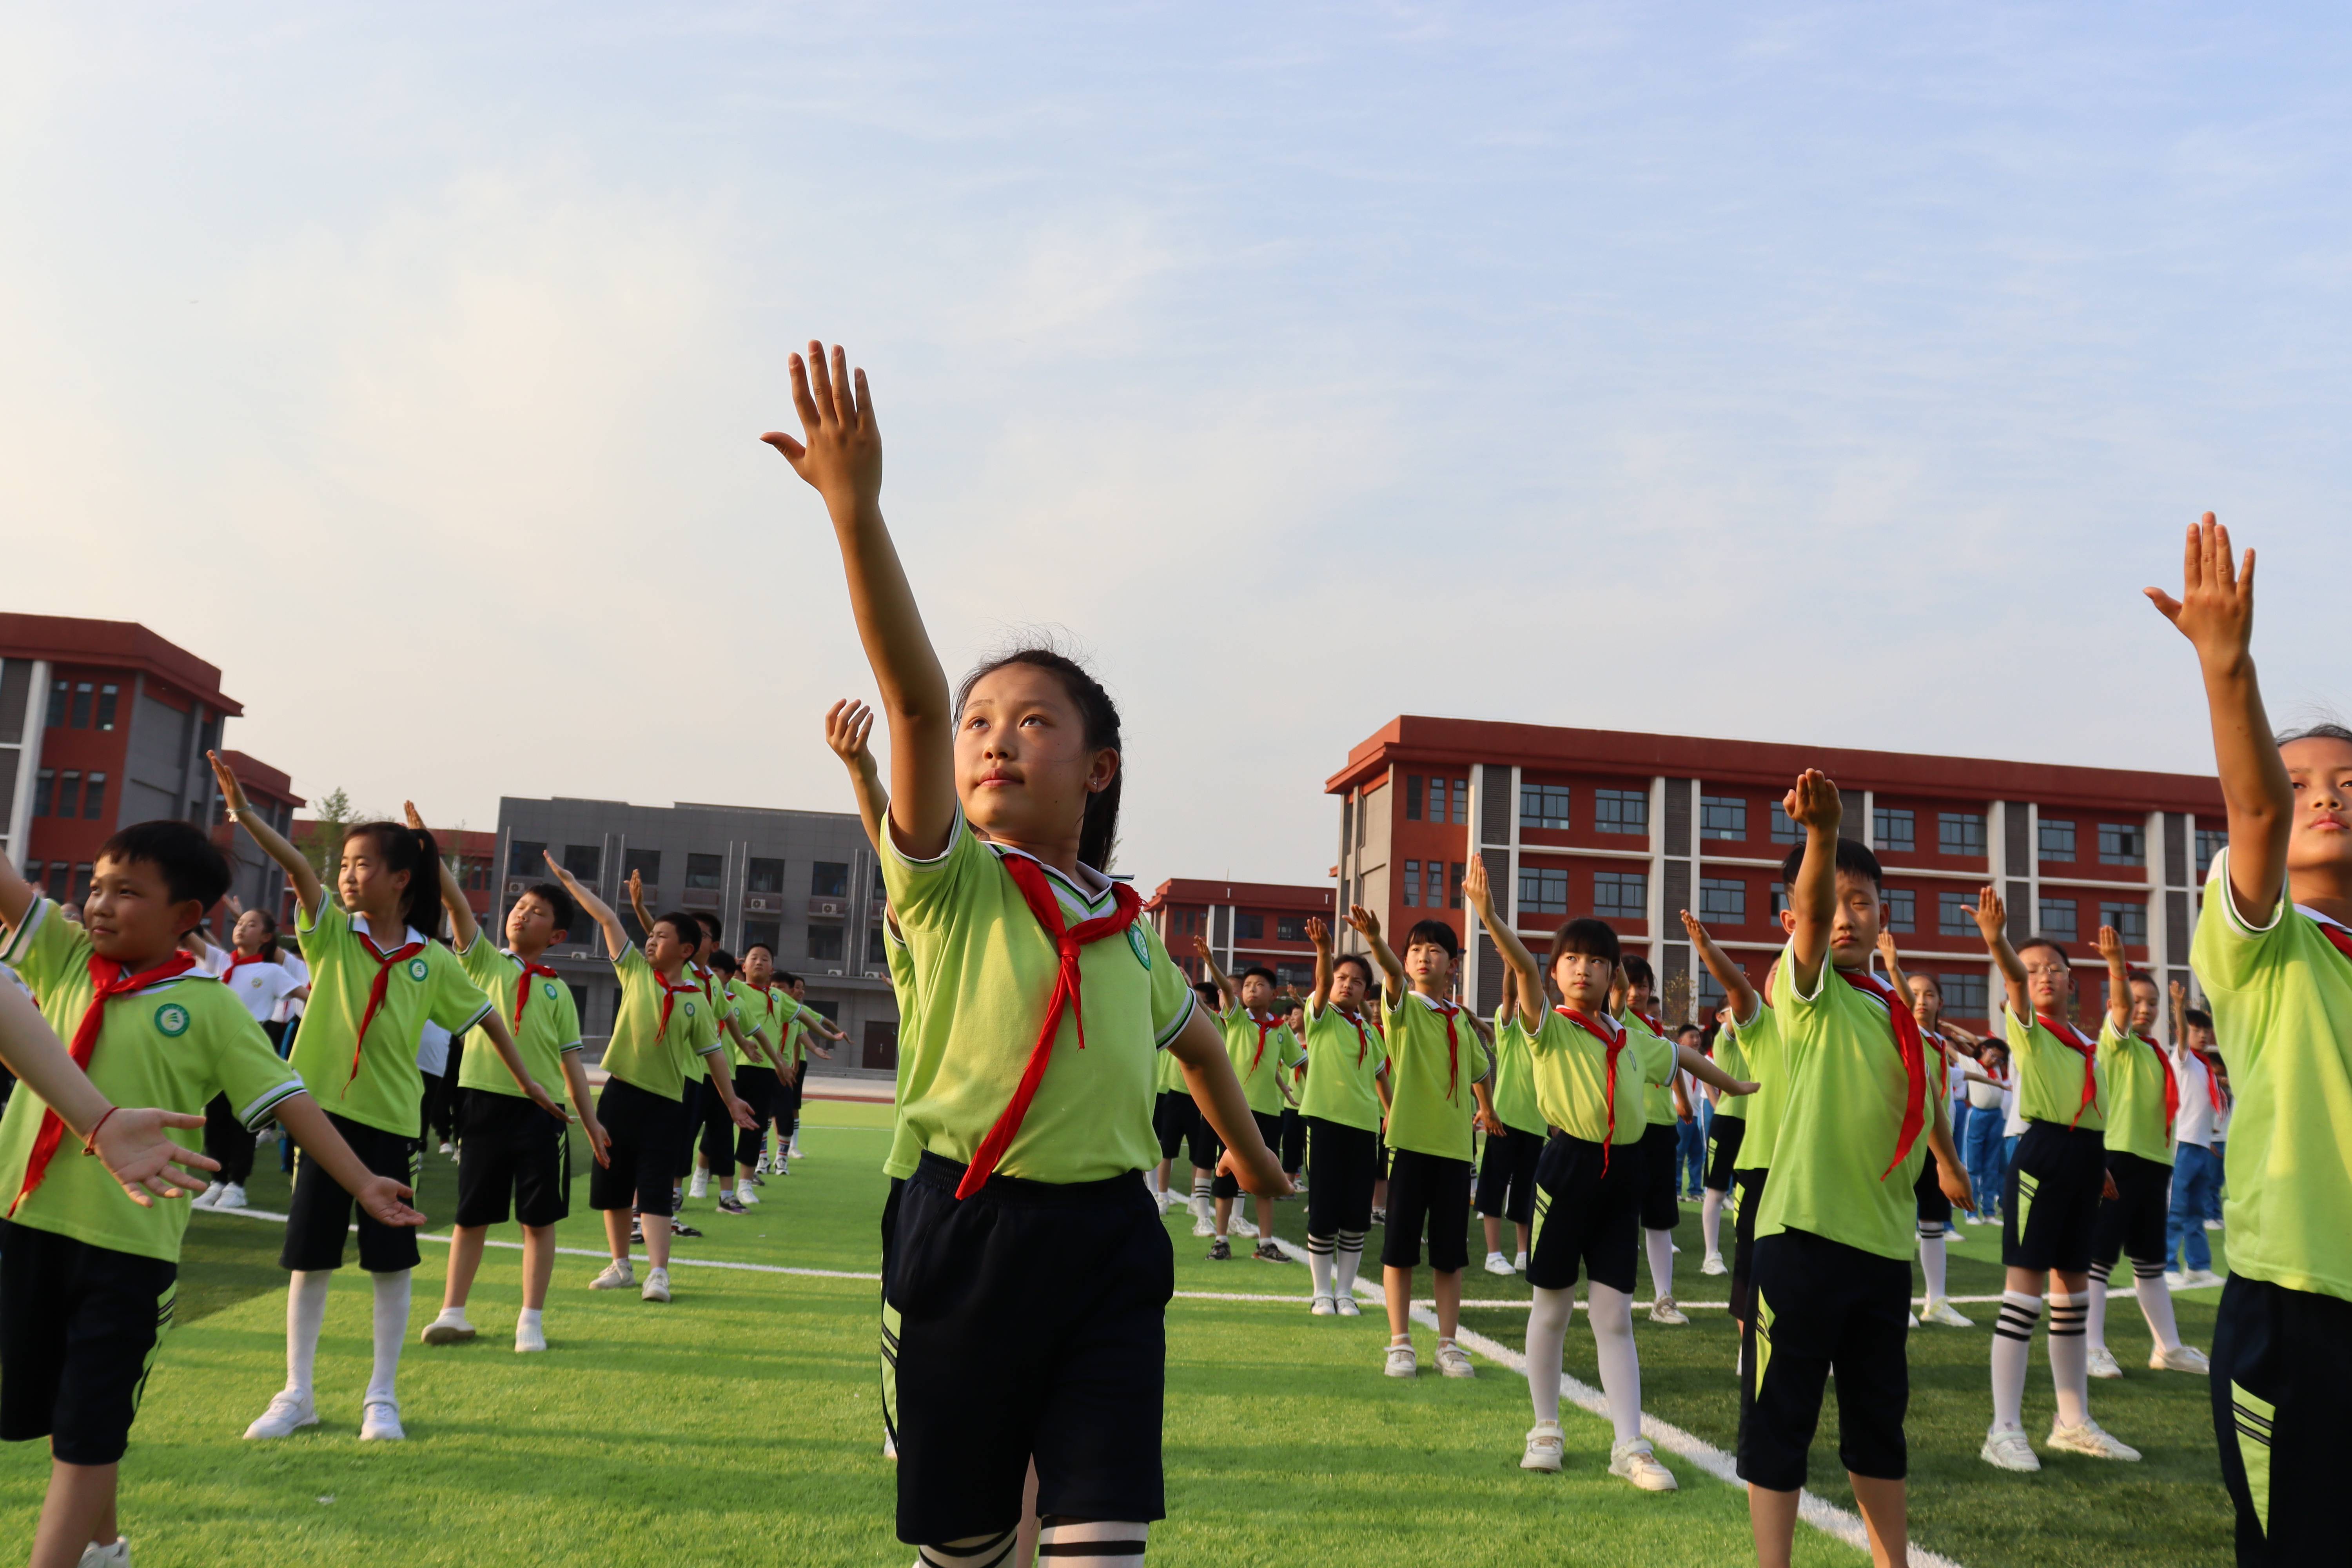 濮东小学以课间操比赛的形式展示了学校的精神风貌,不仅加强了学生们